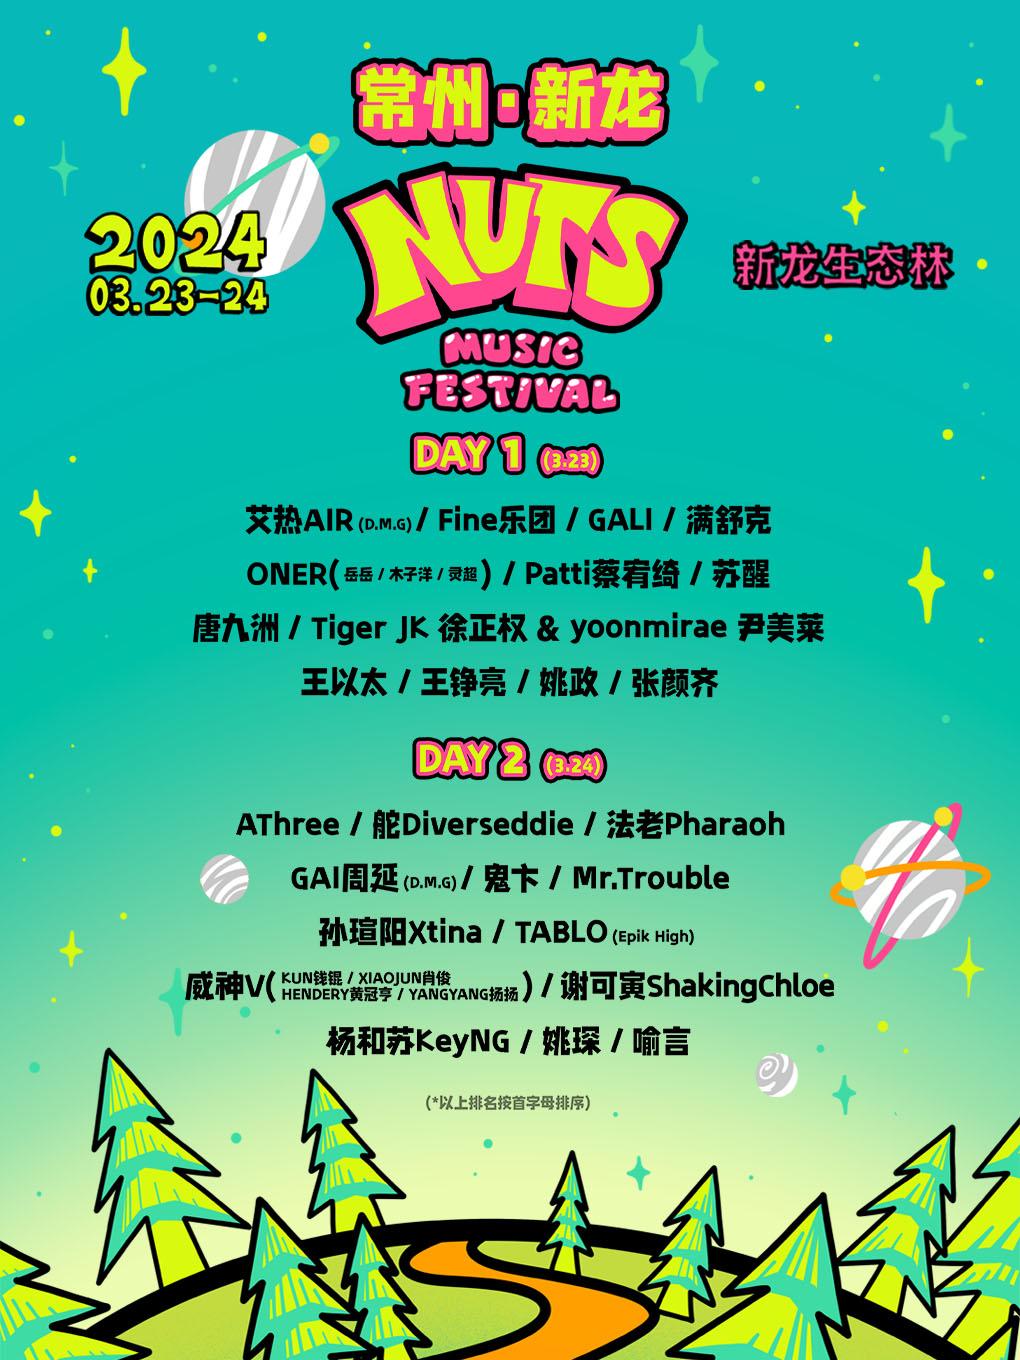 常州·新龙NUTS音乐节